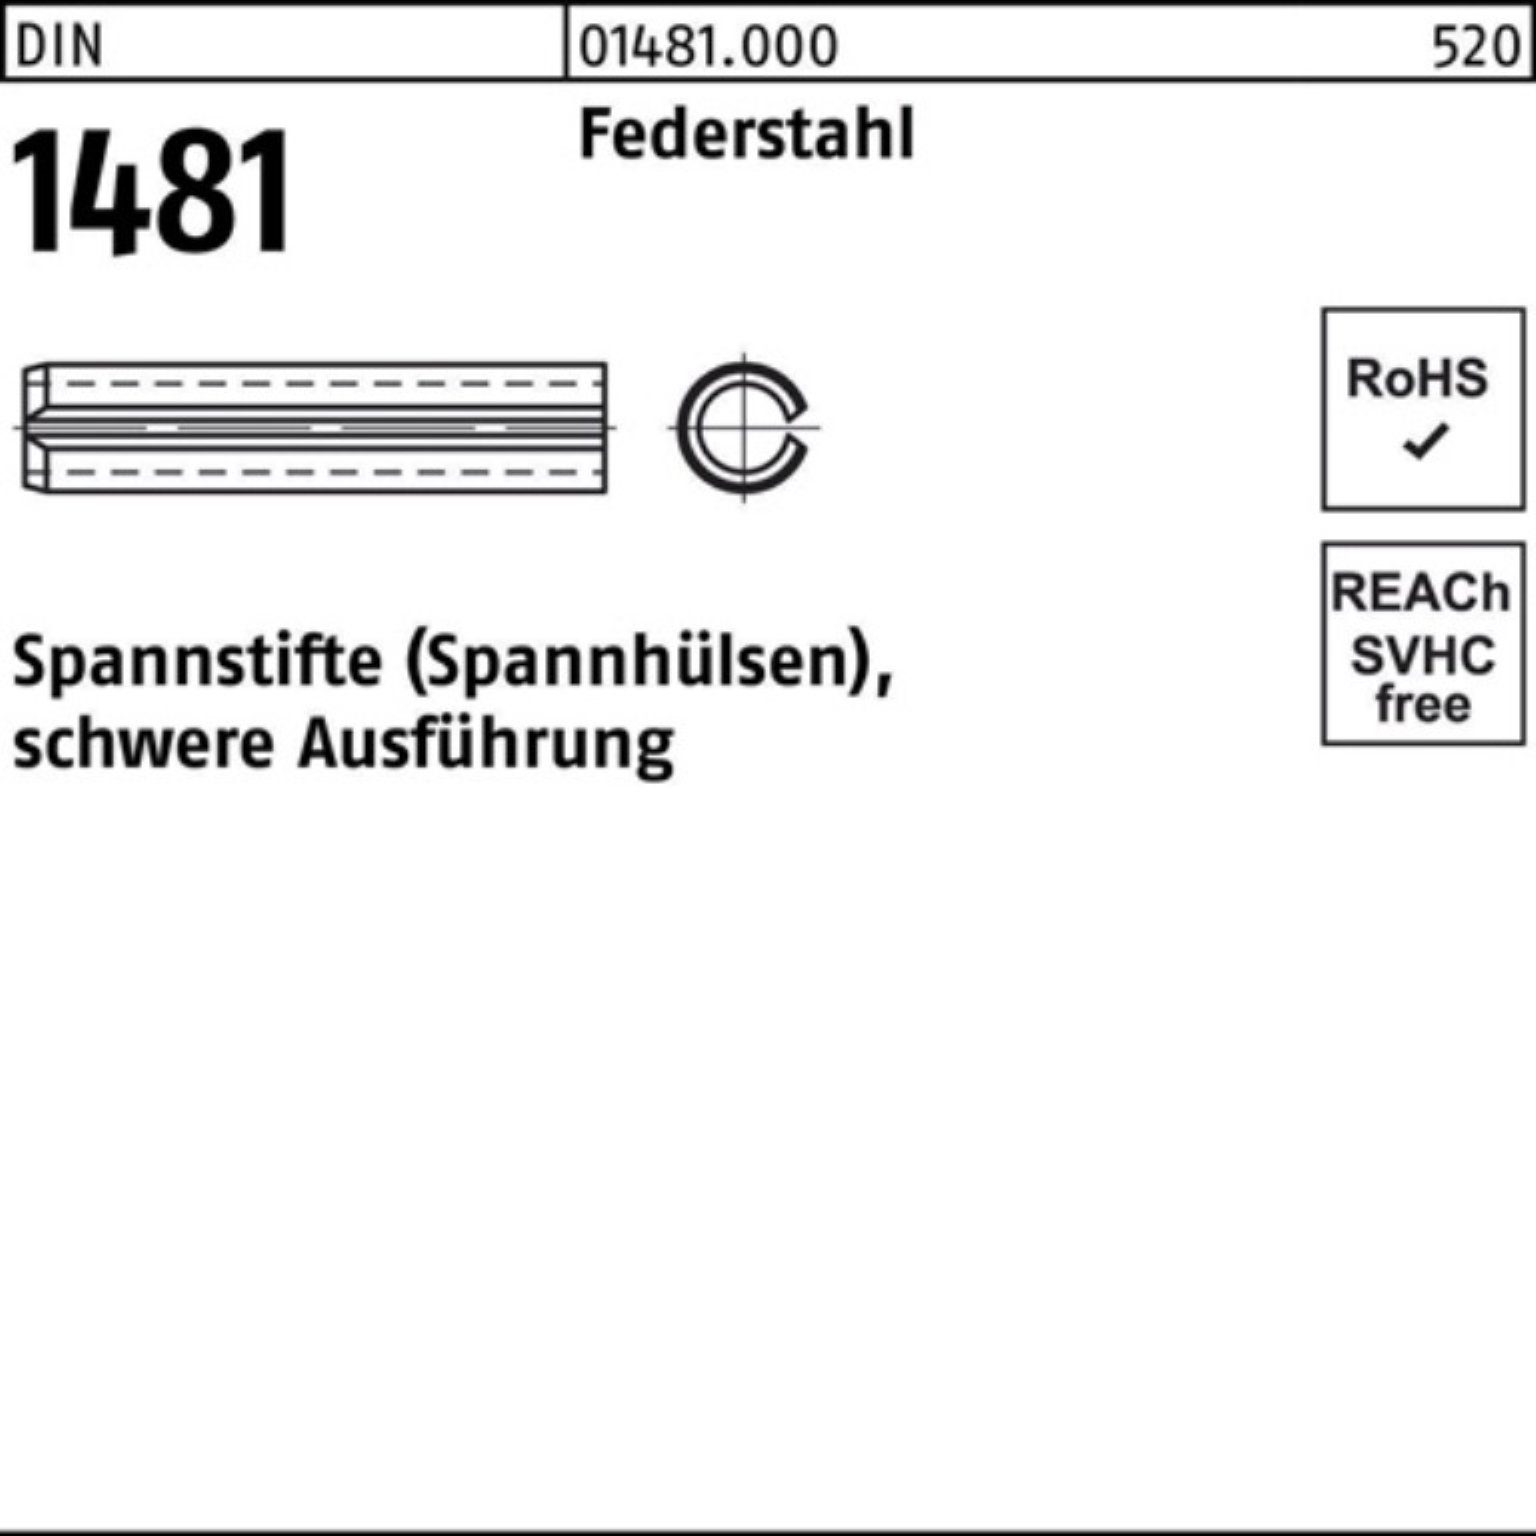 Reyher Spannstift 100er Pack Spannstift DIN 1481 6x 14 Federstahl schwere Ausführung 10